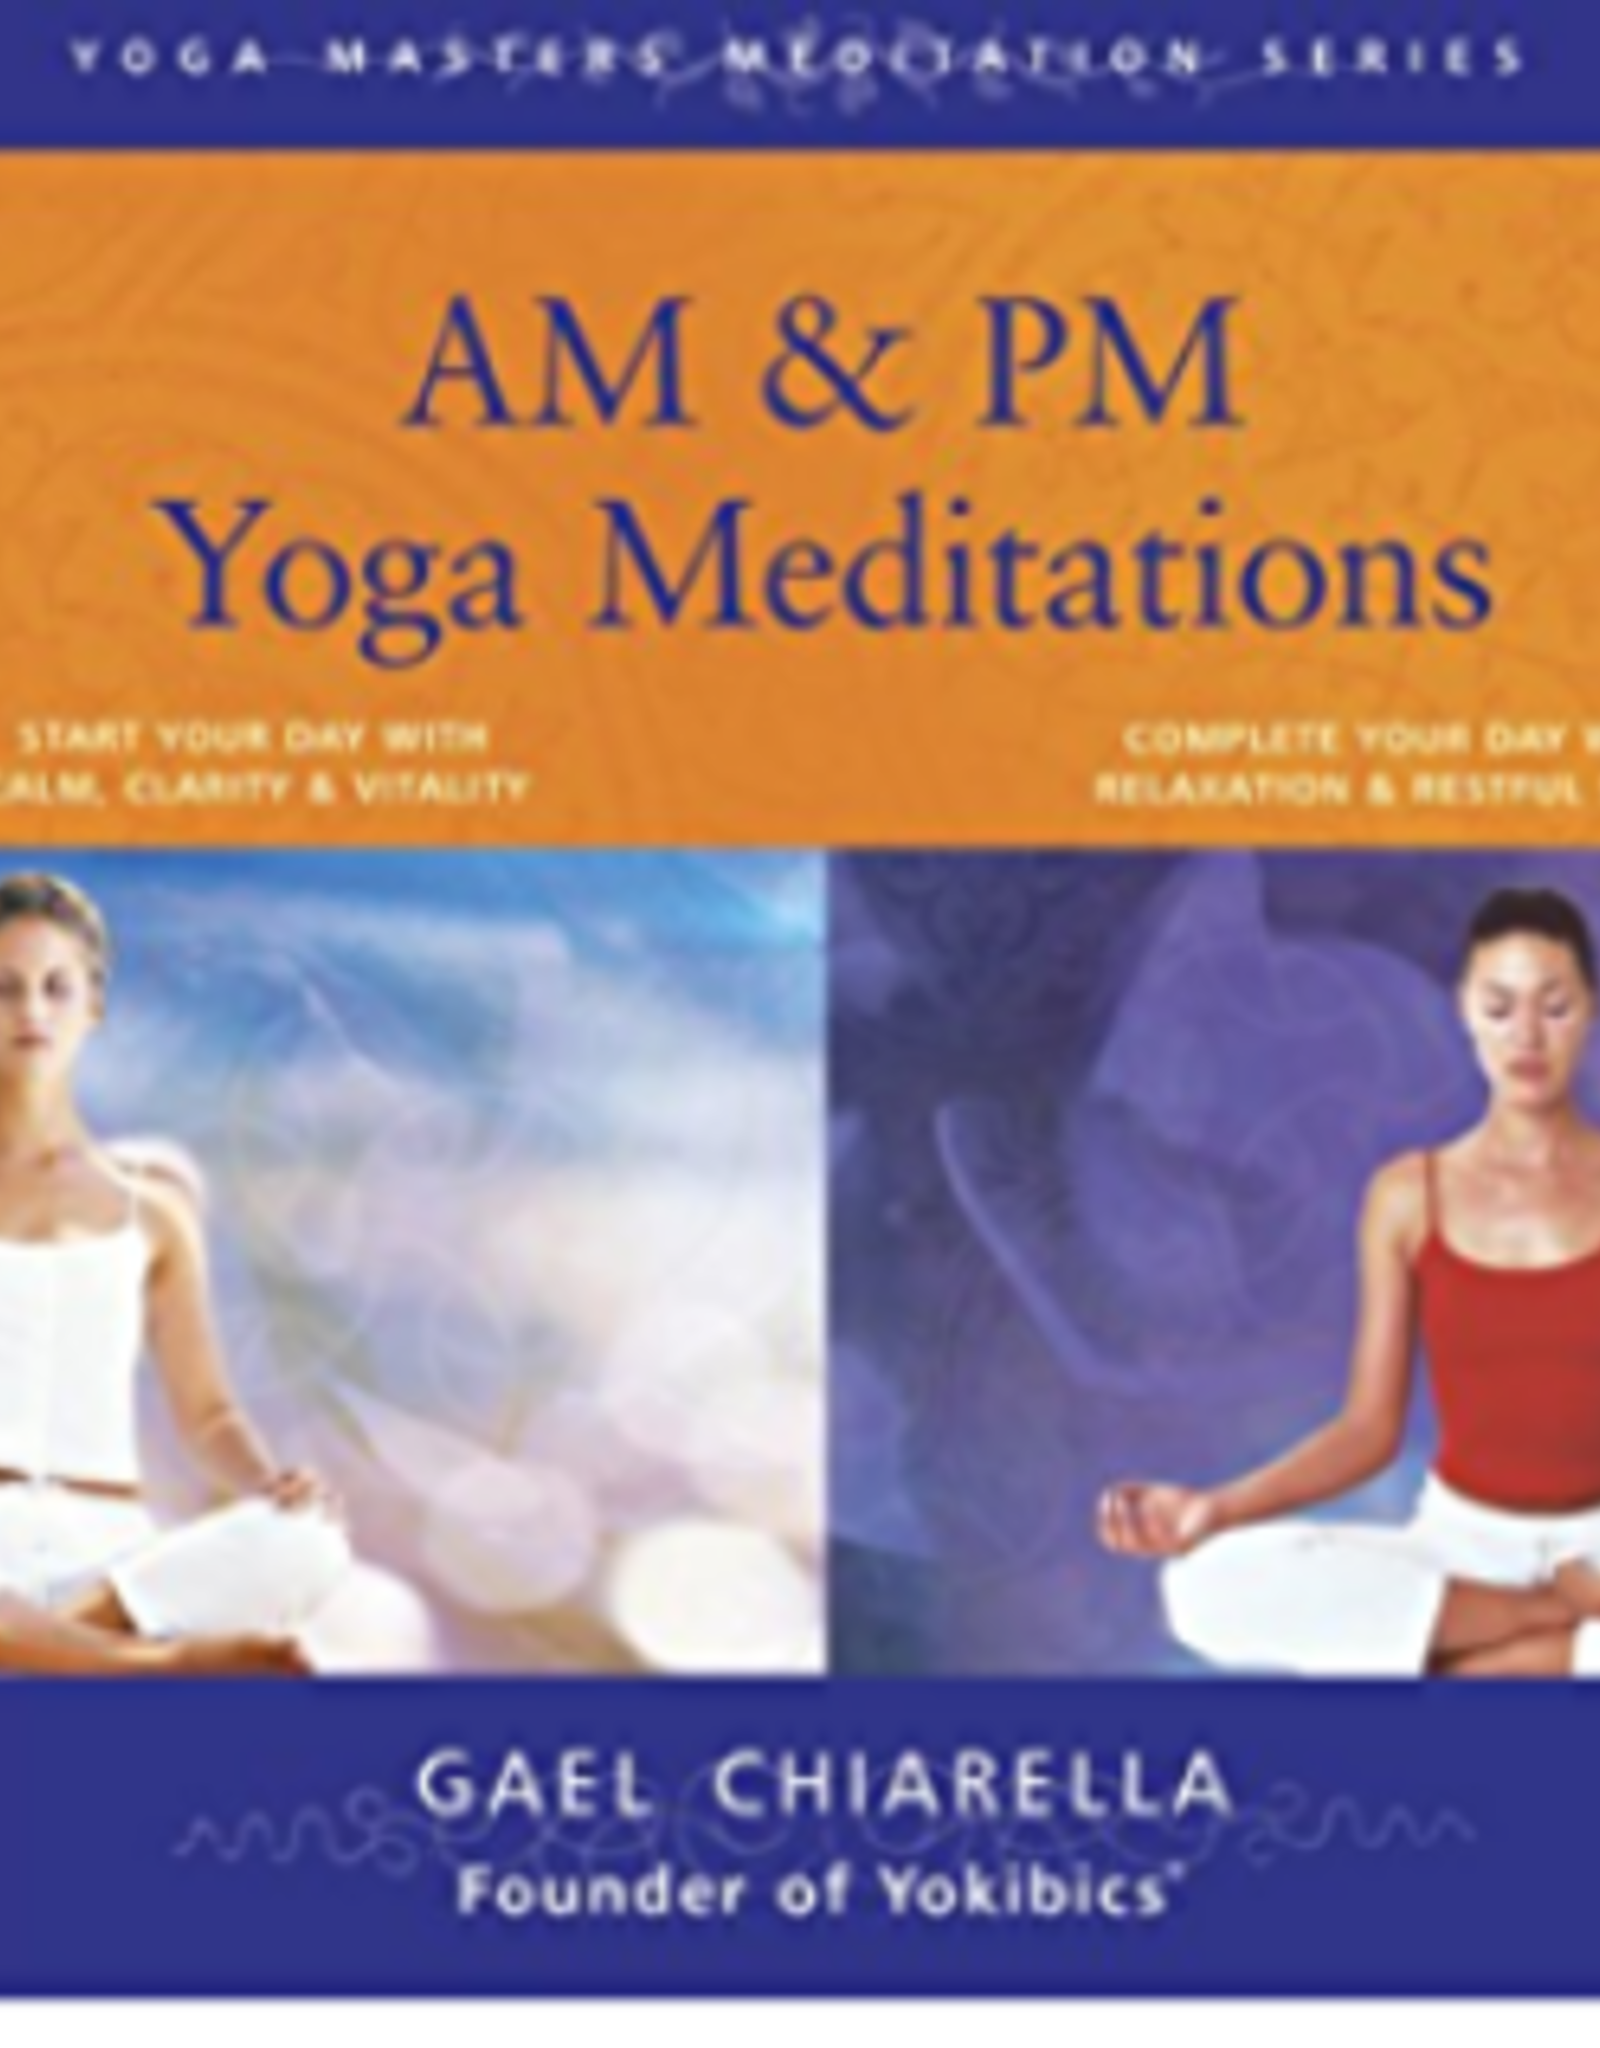 Gael Chiarella AM & PM Yoga Meditation CD's by Gael Chiarella